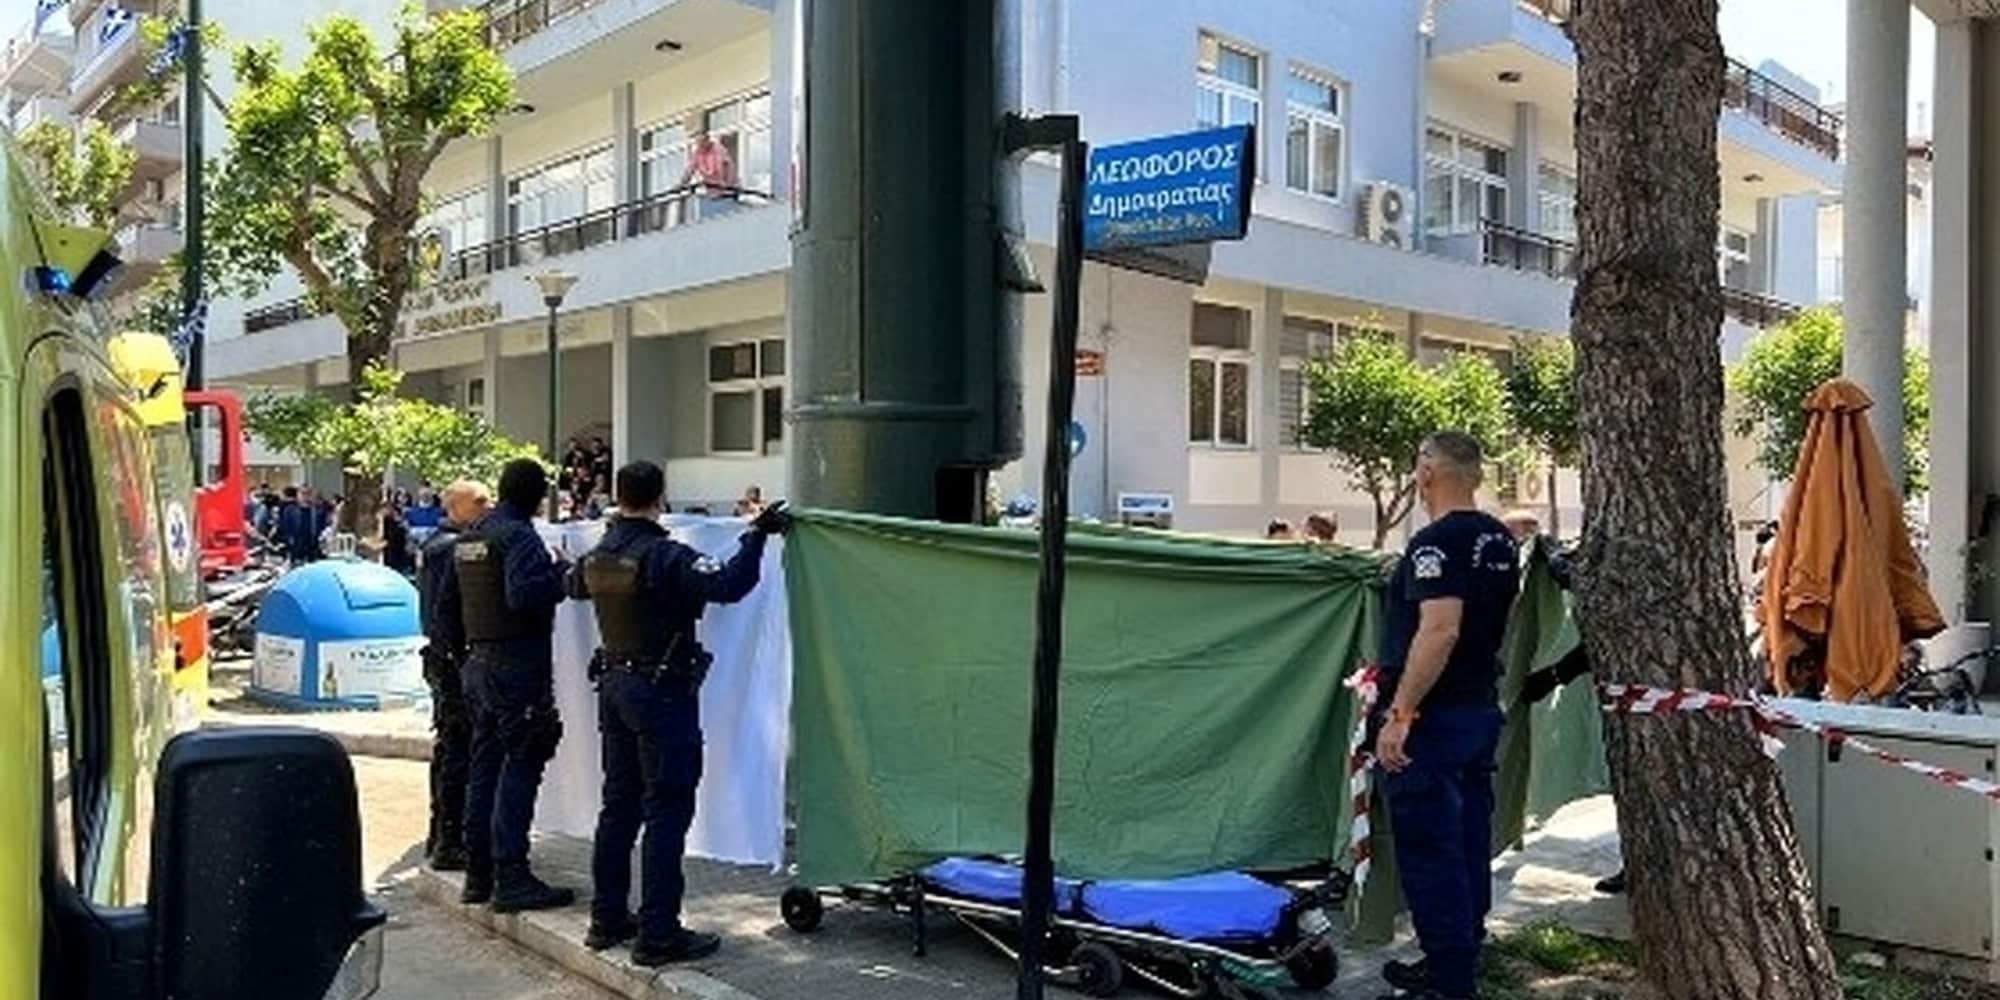 Σκοτώθηκε άστεγος στην Αλεξανδρούπολη που έψαχνε για σκουπίδια